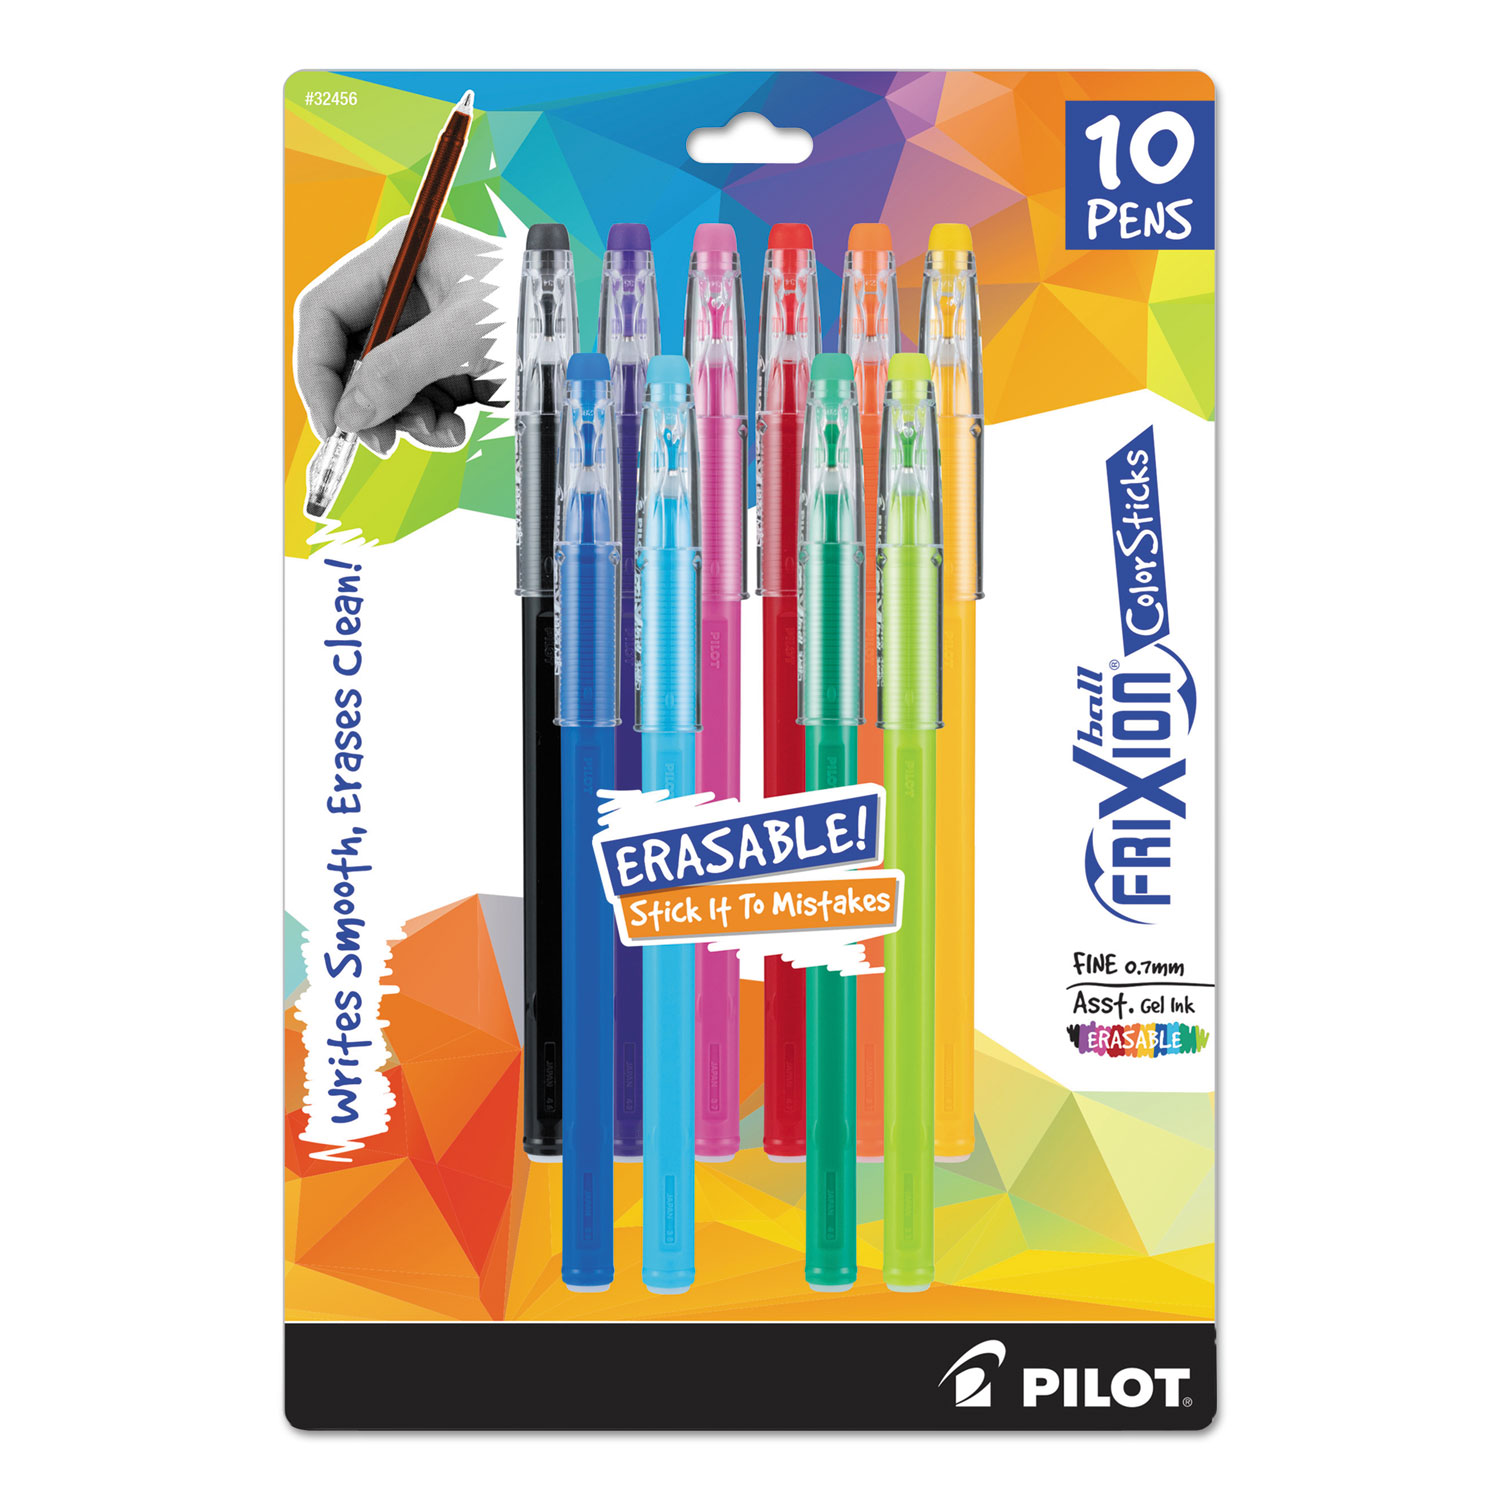  Pilot 32456 FriXion ColorSticks Erasable Stick Gel Pen, 0.7mm, Assorted Ink/Barrel, 10/Pack (PIL32456) 